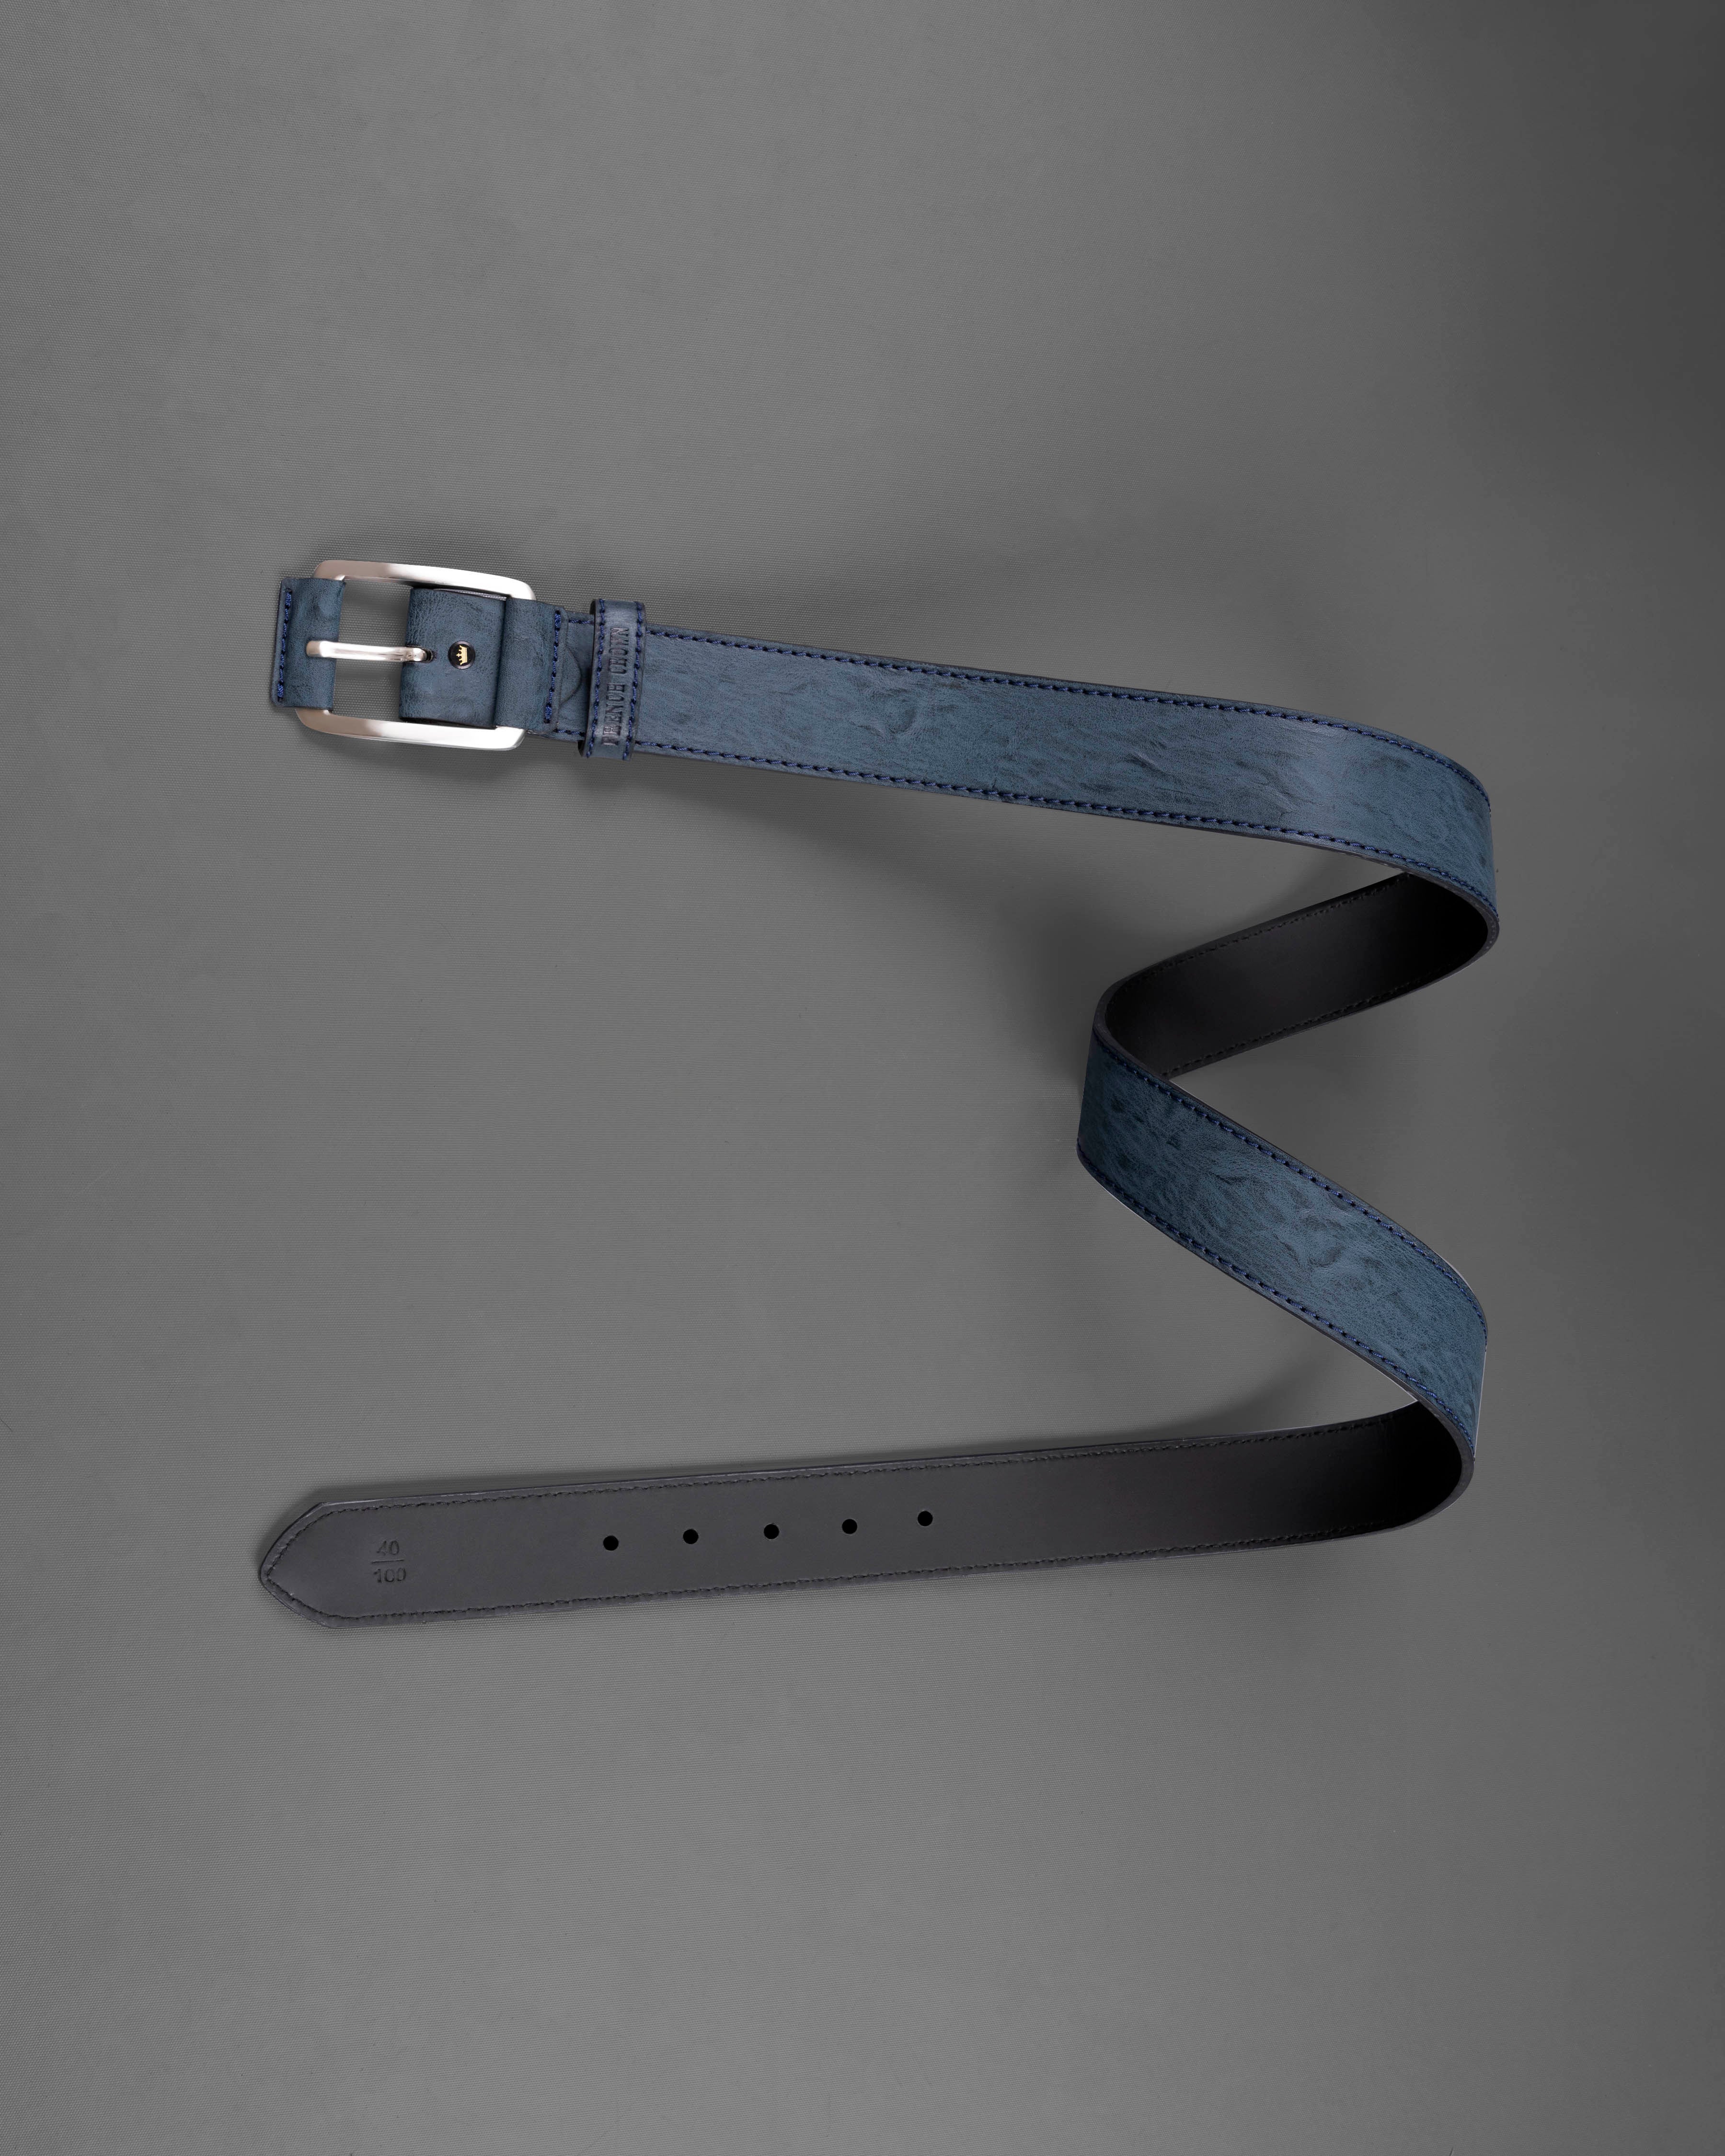 Blue with Metallic Buckle Leather Free Lightweight Handcrafted Belt BT104-28, BT104-30, BT104-32, BT104-34, BT104-36, BT104-38